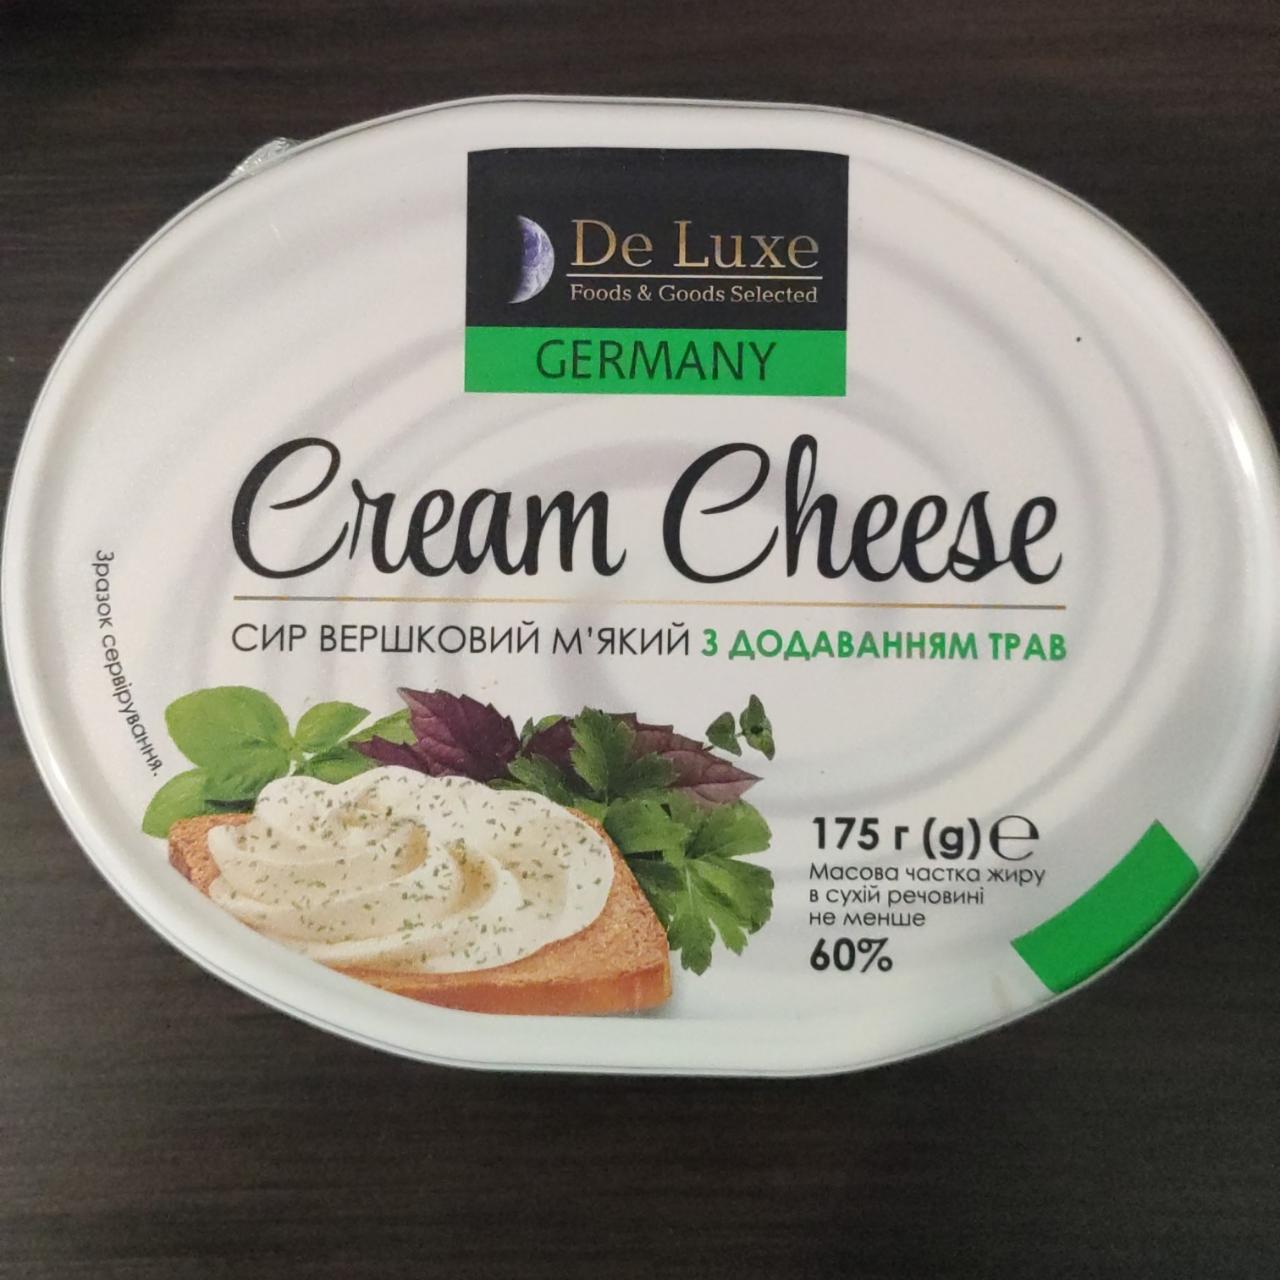 Фото - Сыр плавленый с добавлением трав Cream Cheese De Luxe